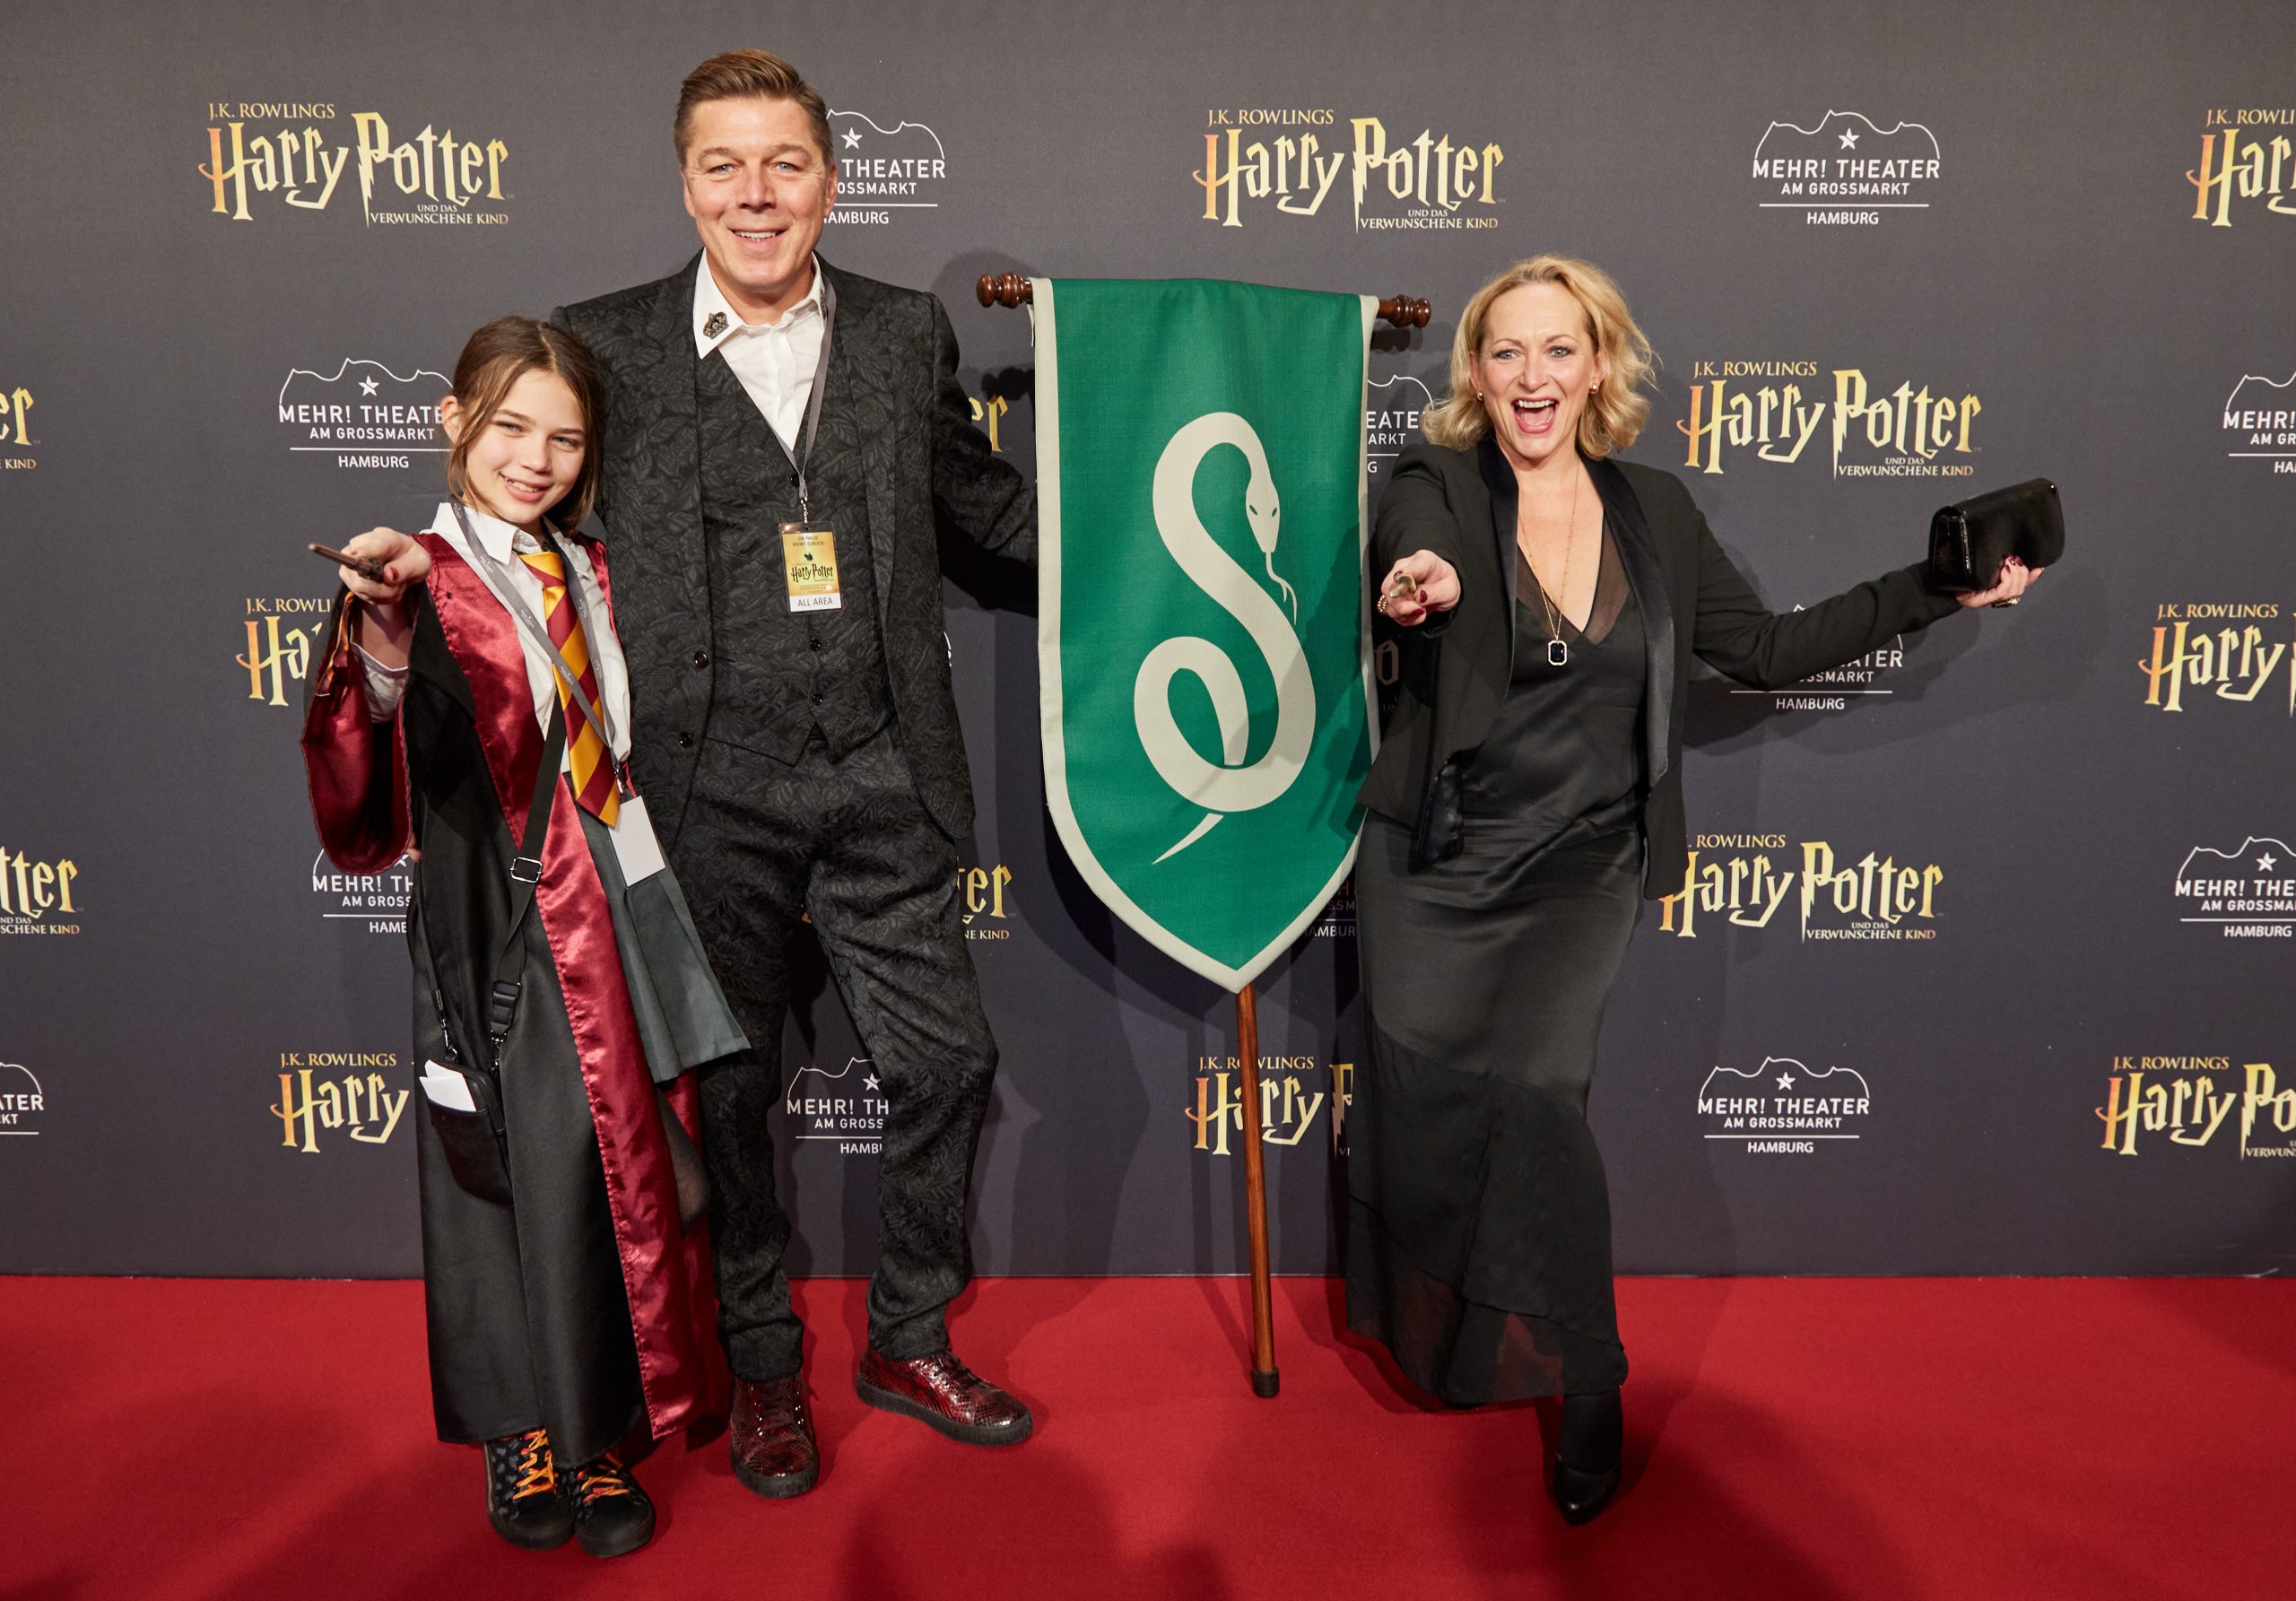 Maik Klokow, Produzent von "Harry Potter und das verwunschene Kind", seine Frau Anna Montanaro Klokow und seine Tochter Marlene.